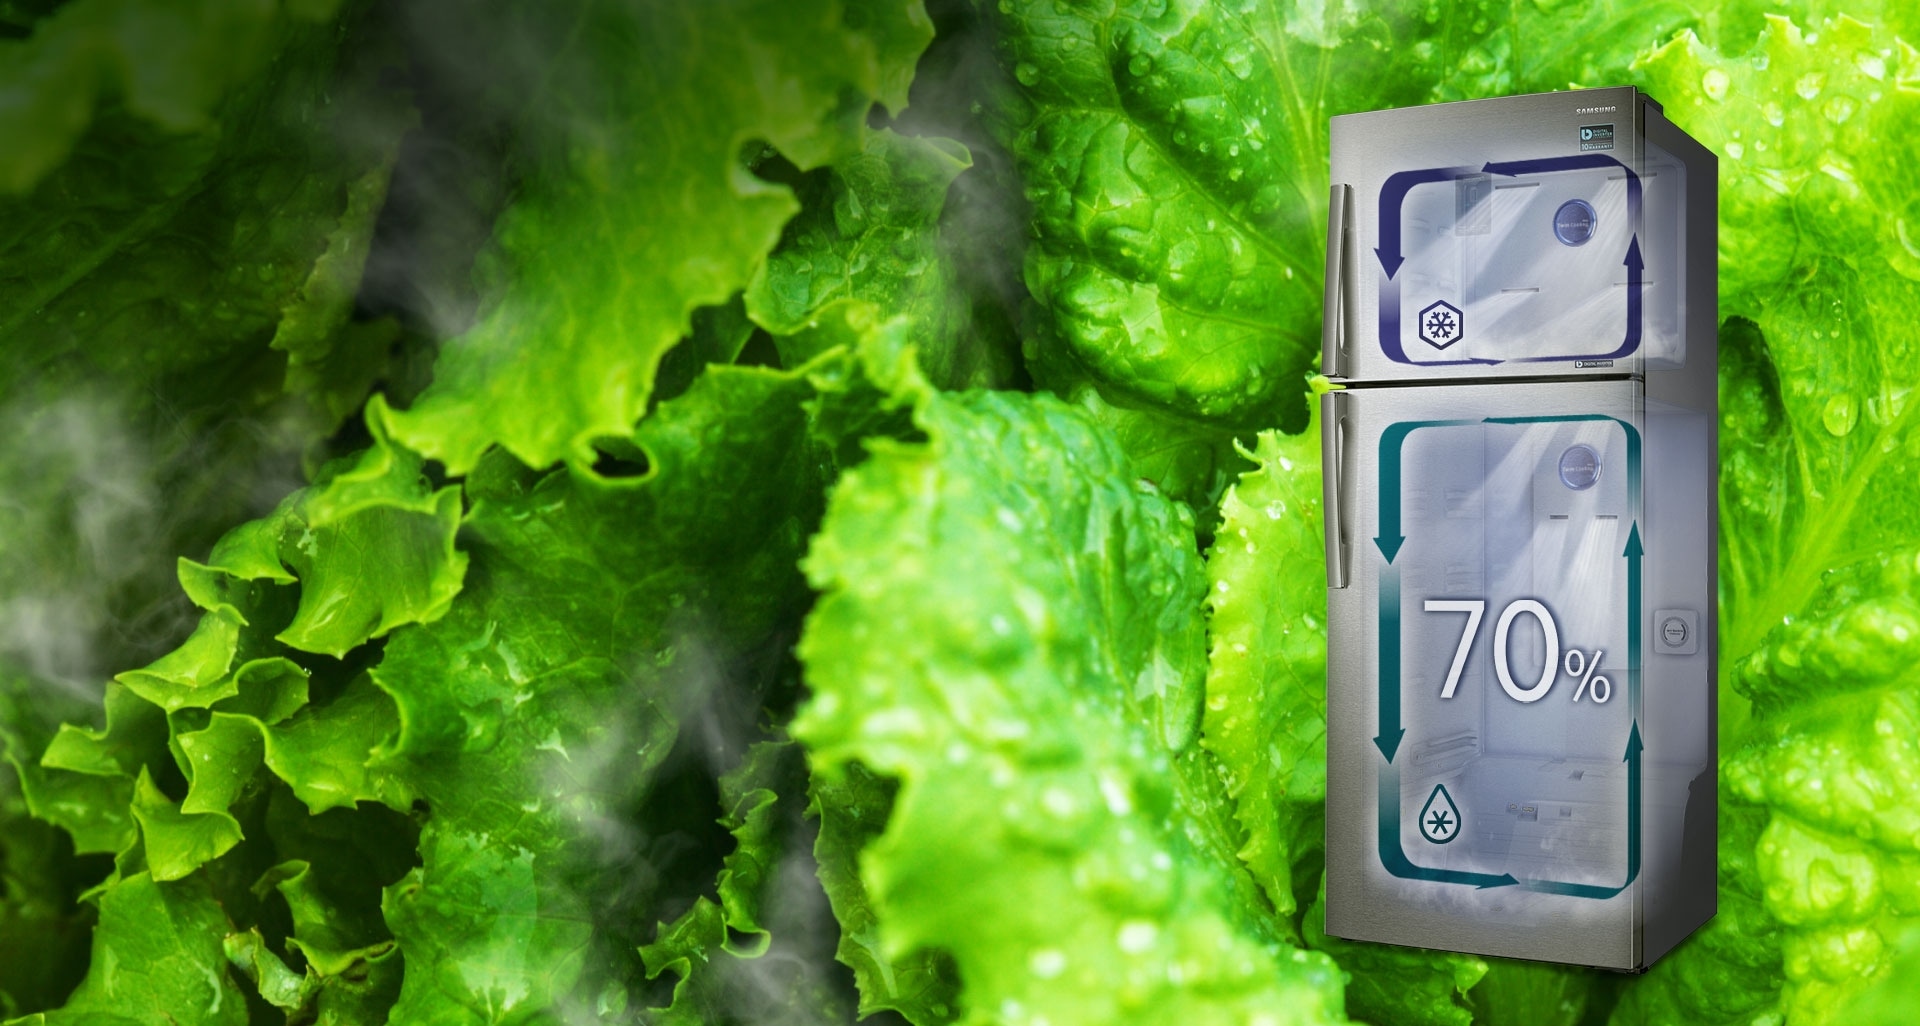 Seule la technologie Twin Cooling Plus™ est capable de créer un environnement qui favorise la préservation des aliments frais dans le réfrigérateur grâce à un taux d’humidité de 70 %, contre 30 % dans les réfrigérateurs classiques avec congélateur en haut. Cette technologie conserve ainsi plus longtemps la fraîcheur des aliments, sans les dessécher.